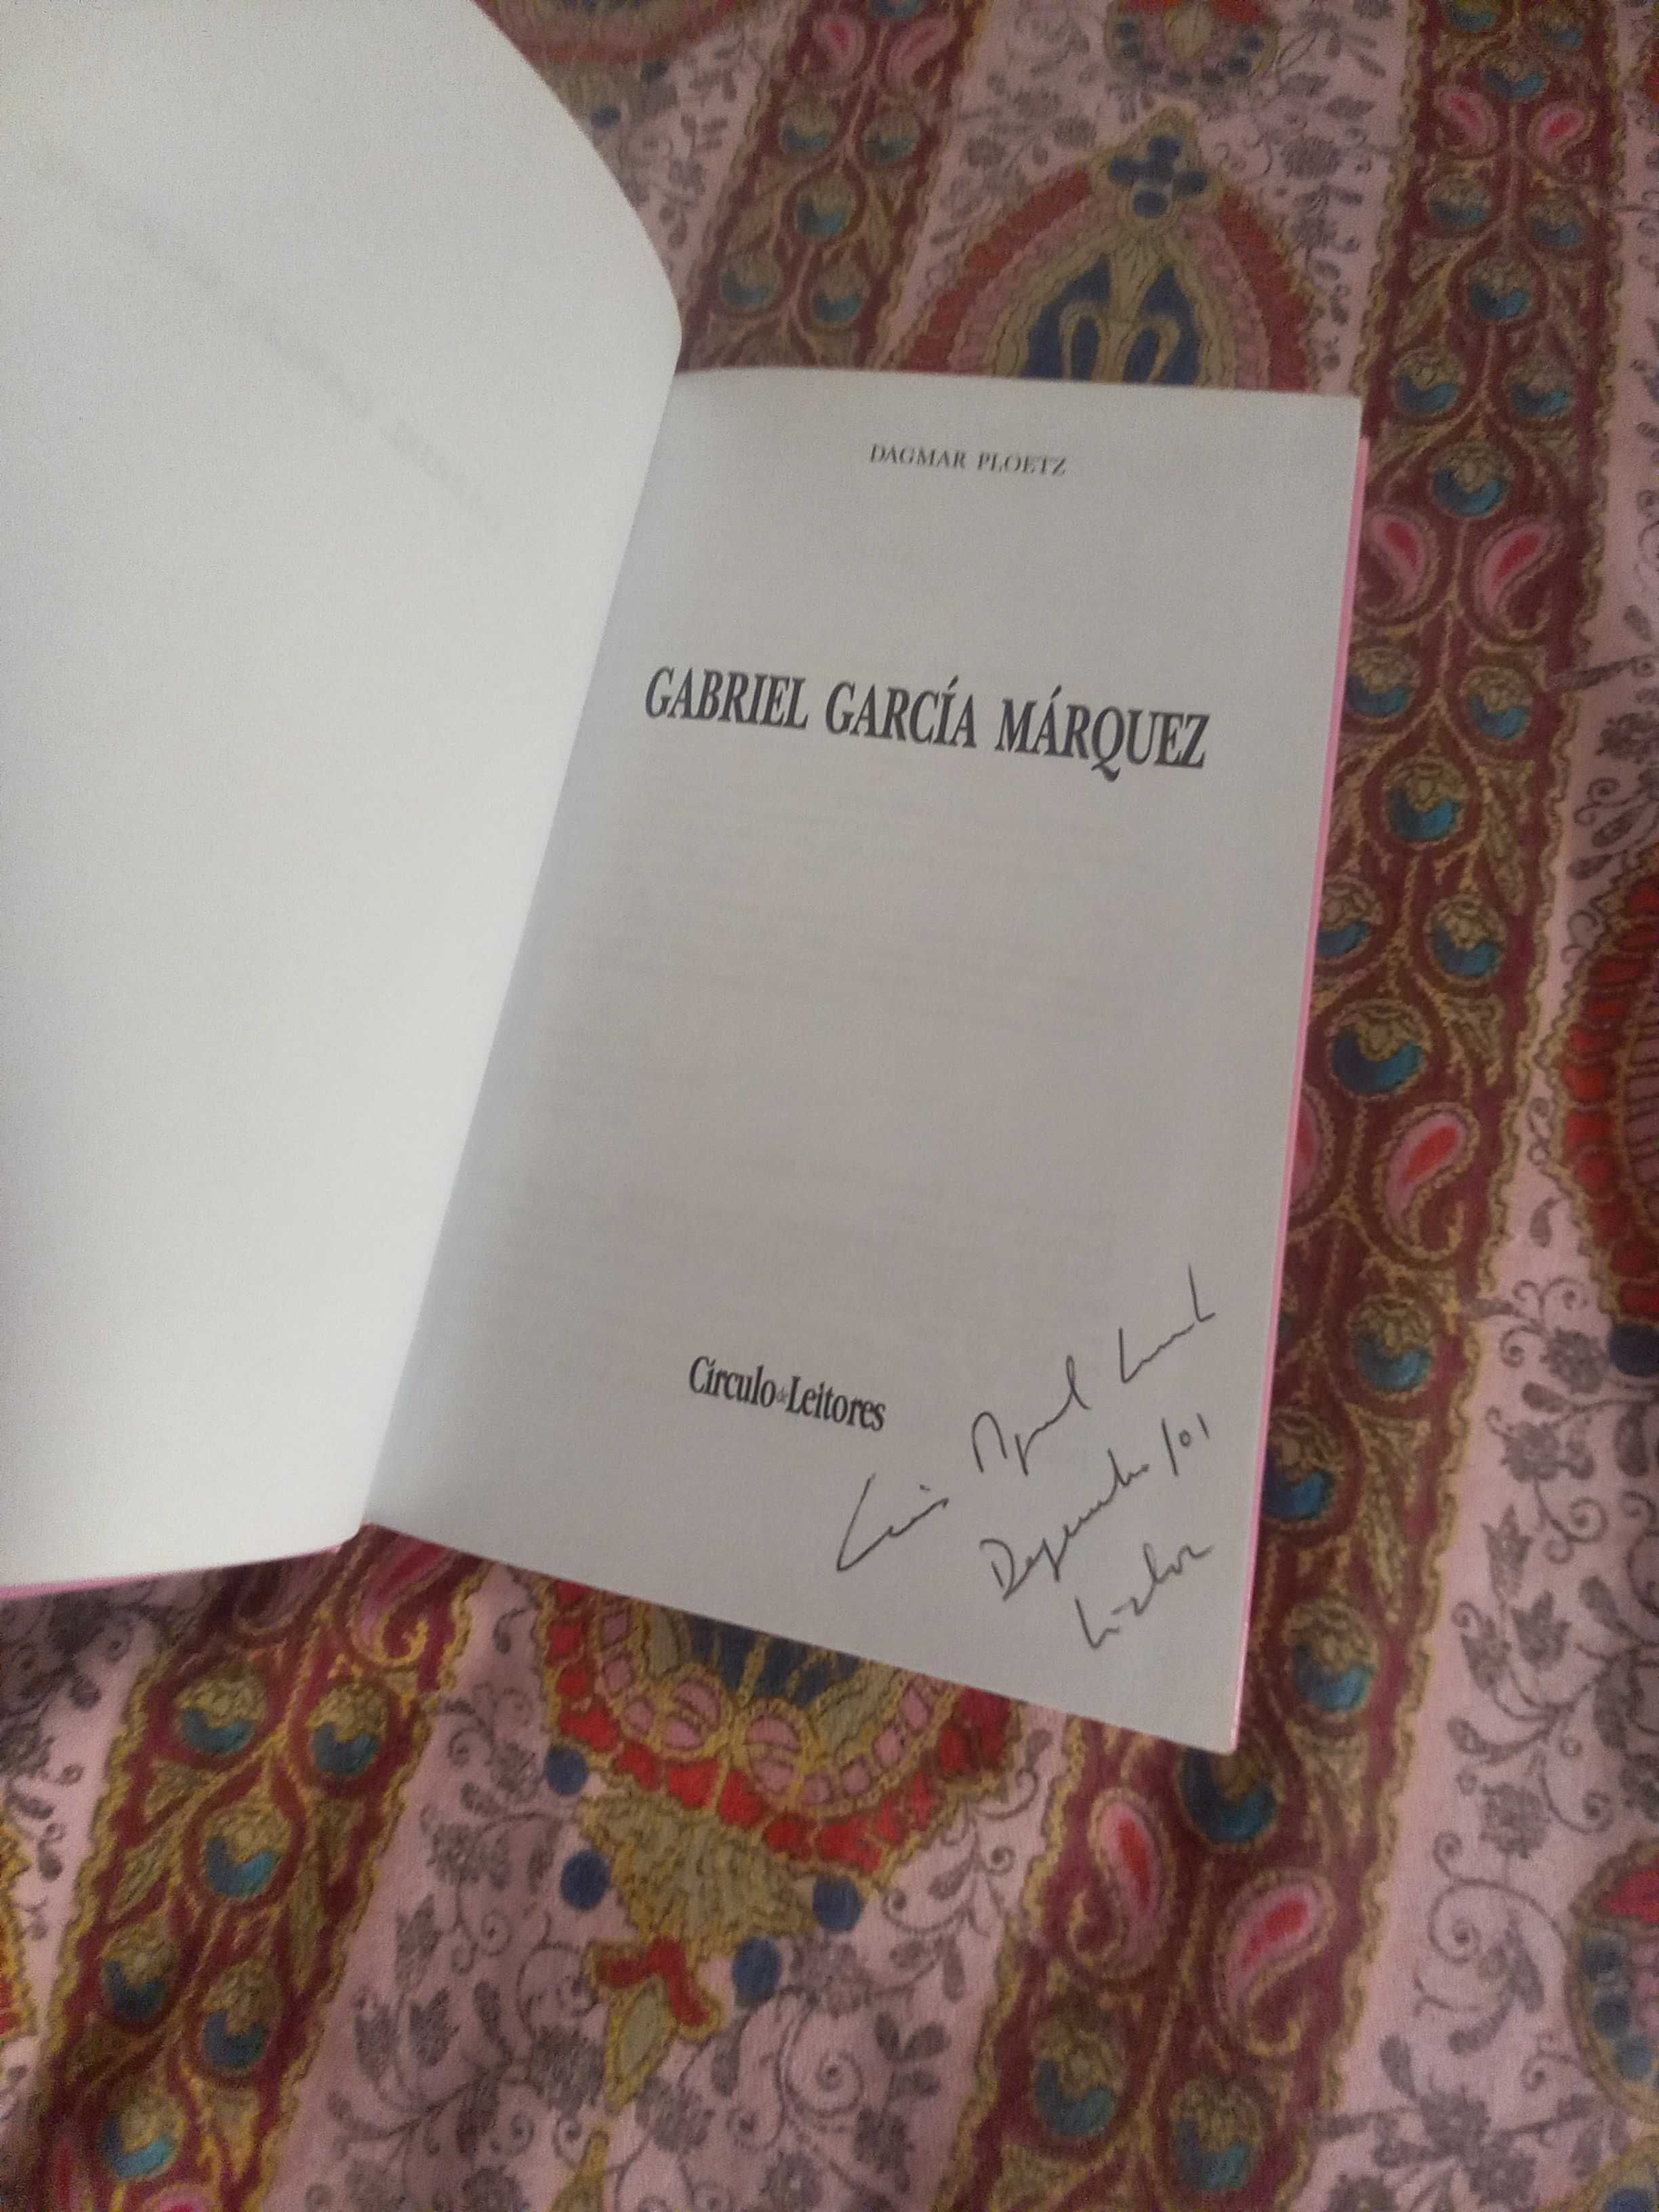 Biografia do escritor Gabriel Garcia Marquez